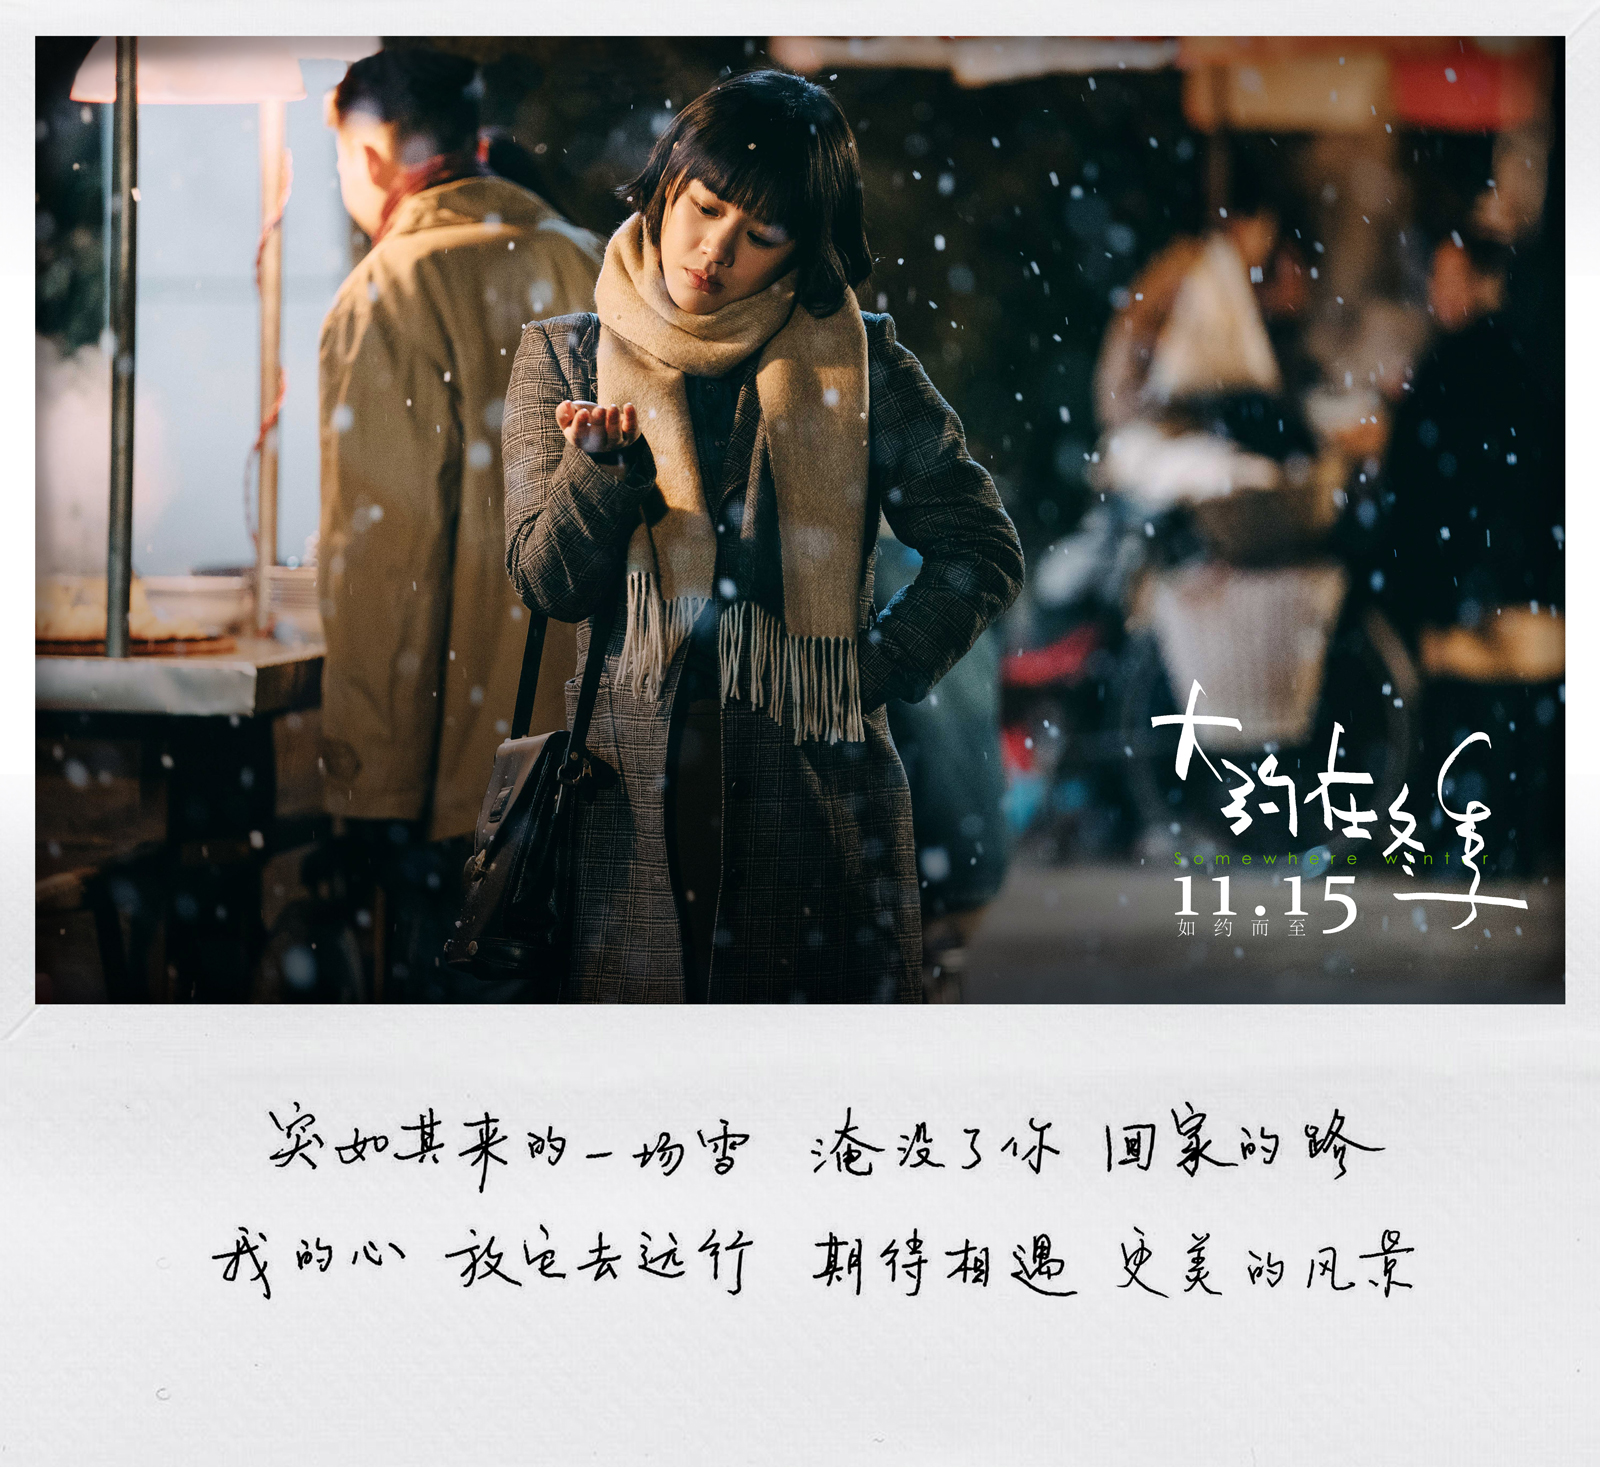 《大约在冬季》发布人物主题曲《安然》 马思纯手写歌词